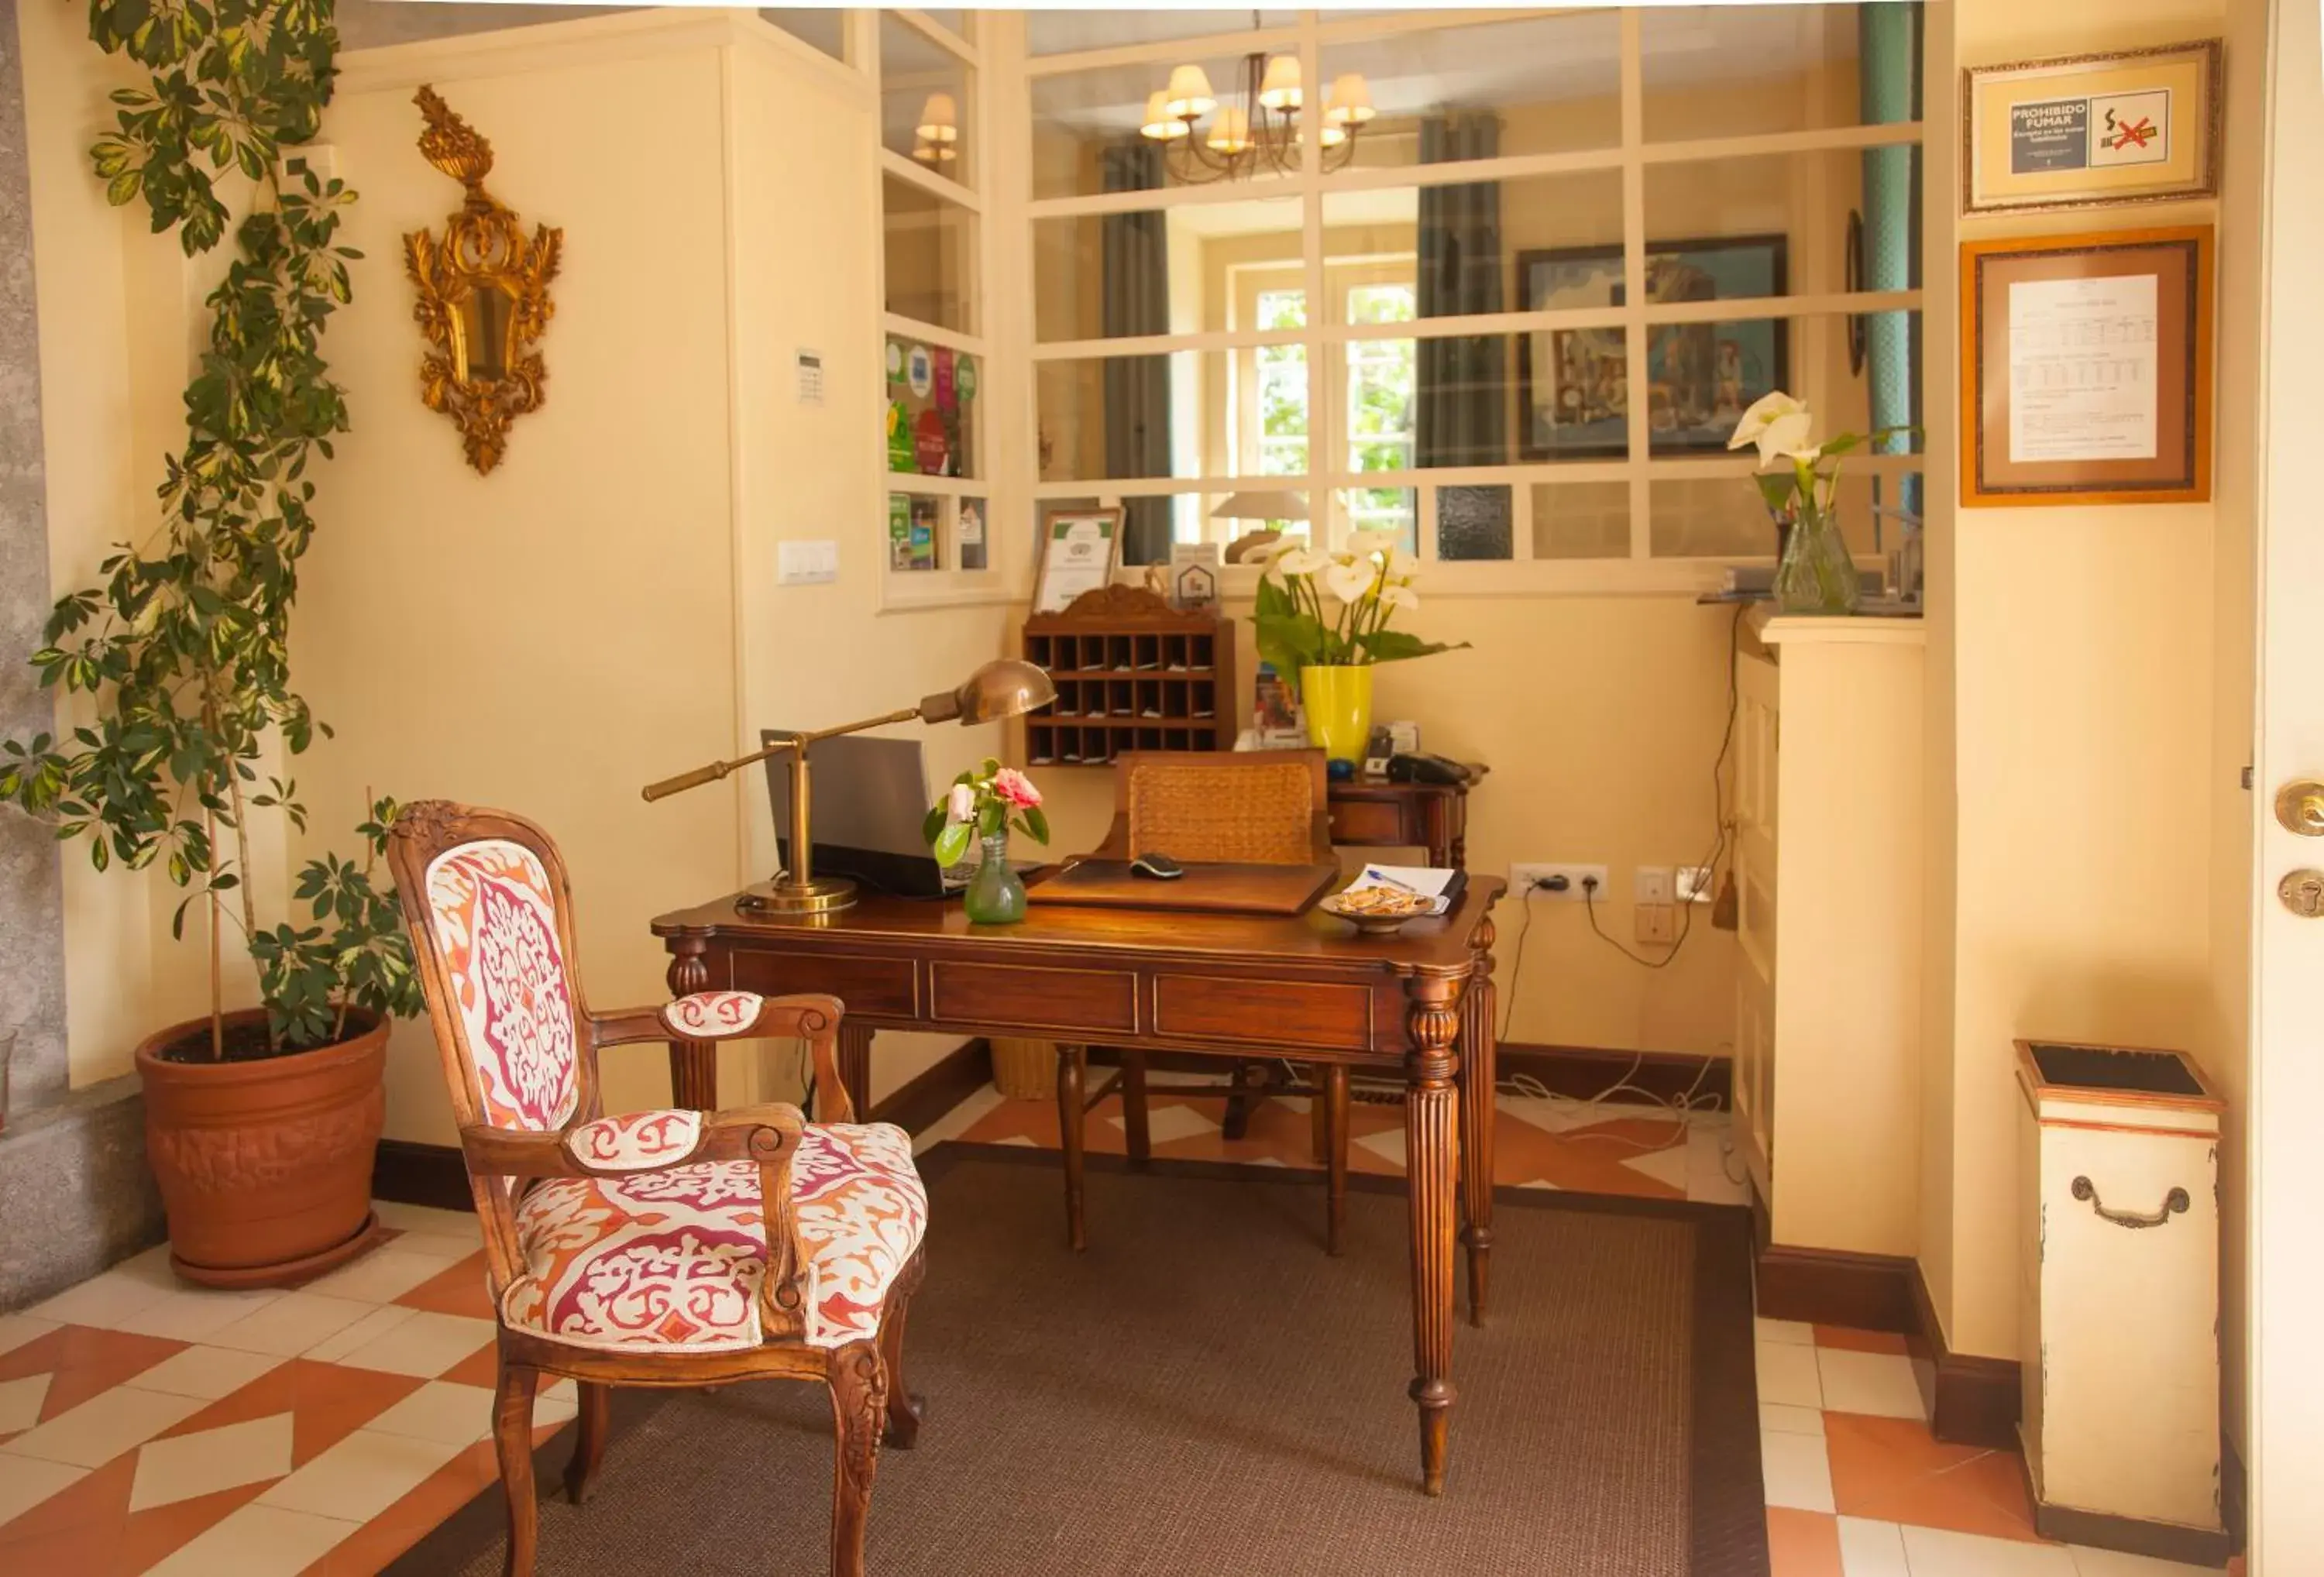 Lobby or reception in Casona de la Paca Apartments